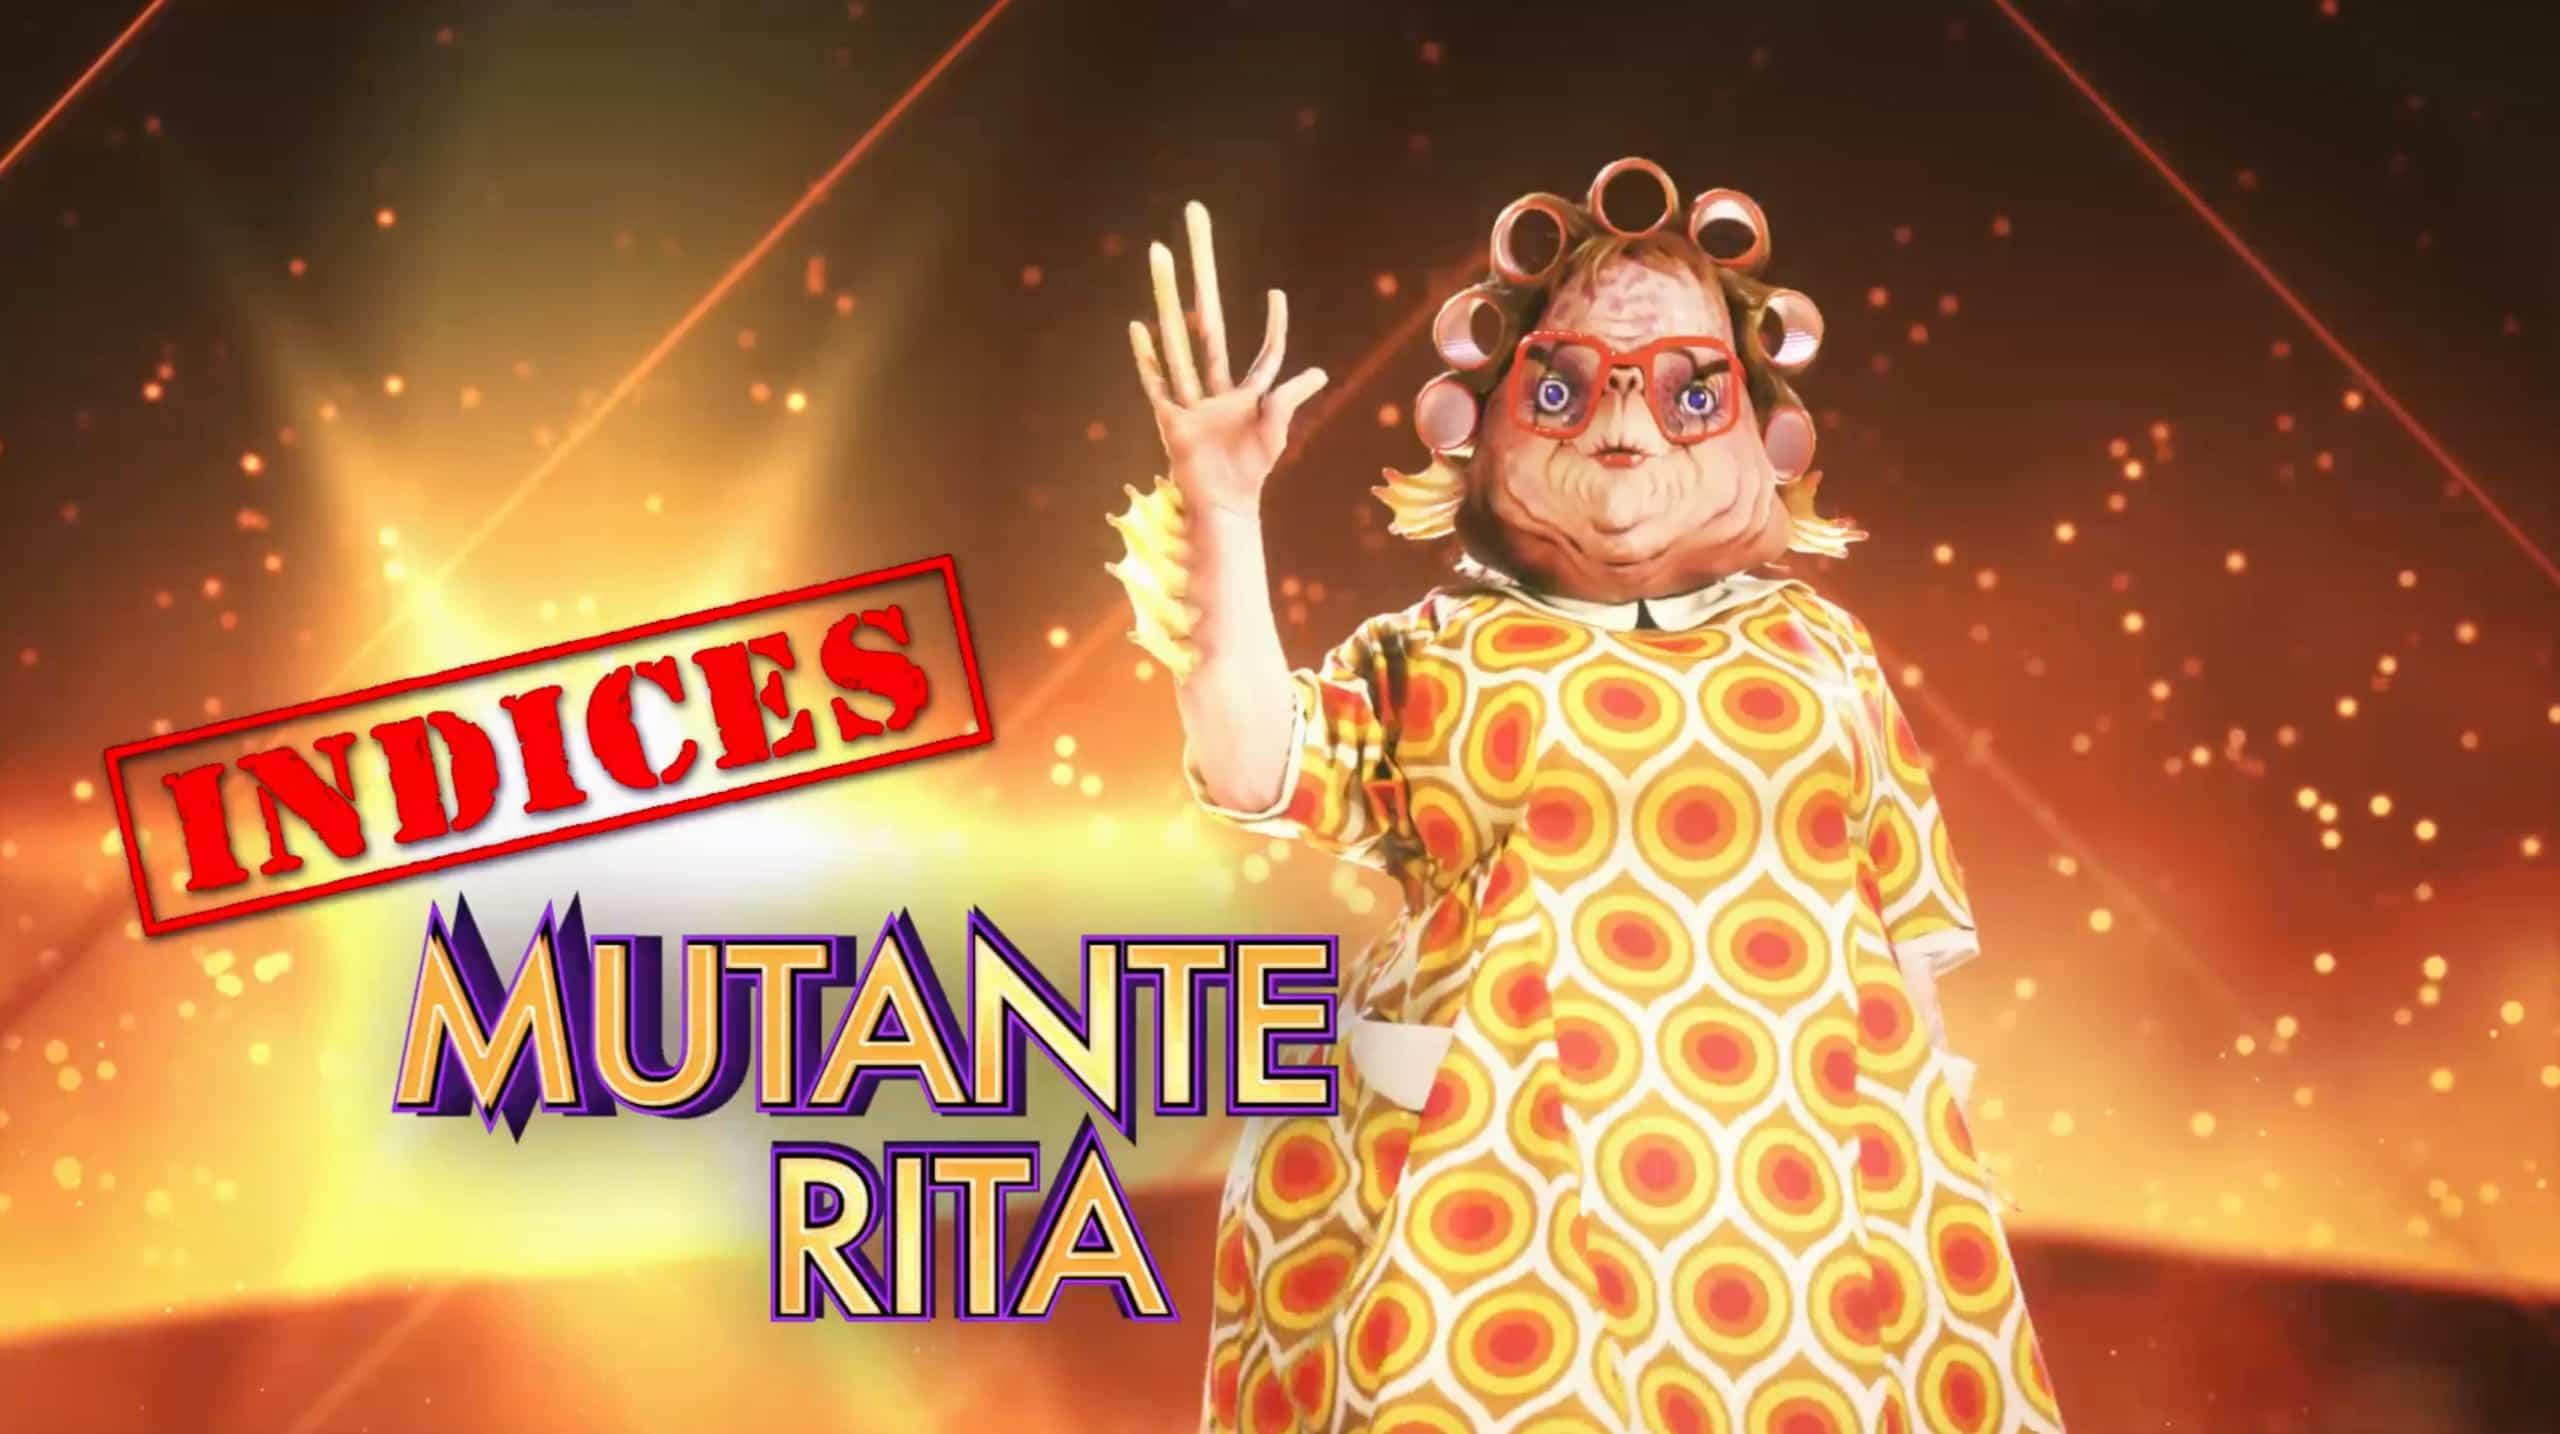 Mutante Rita - Indices 3